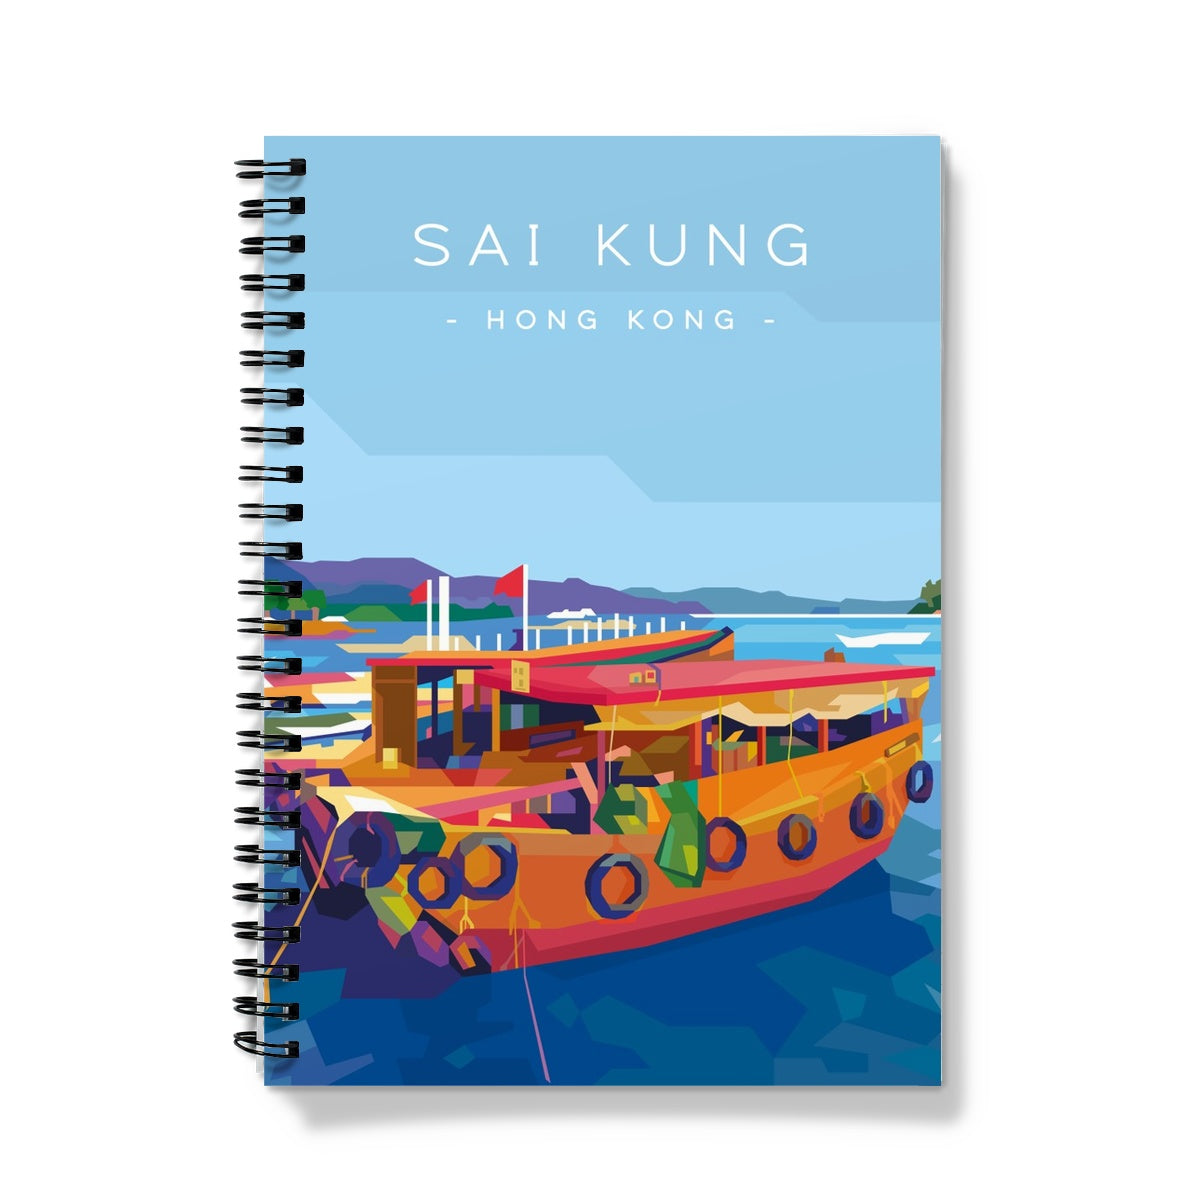 Hong Kong Travel - Sai Kung Sampans Notebook